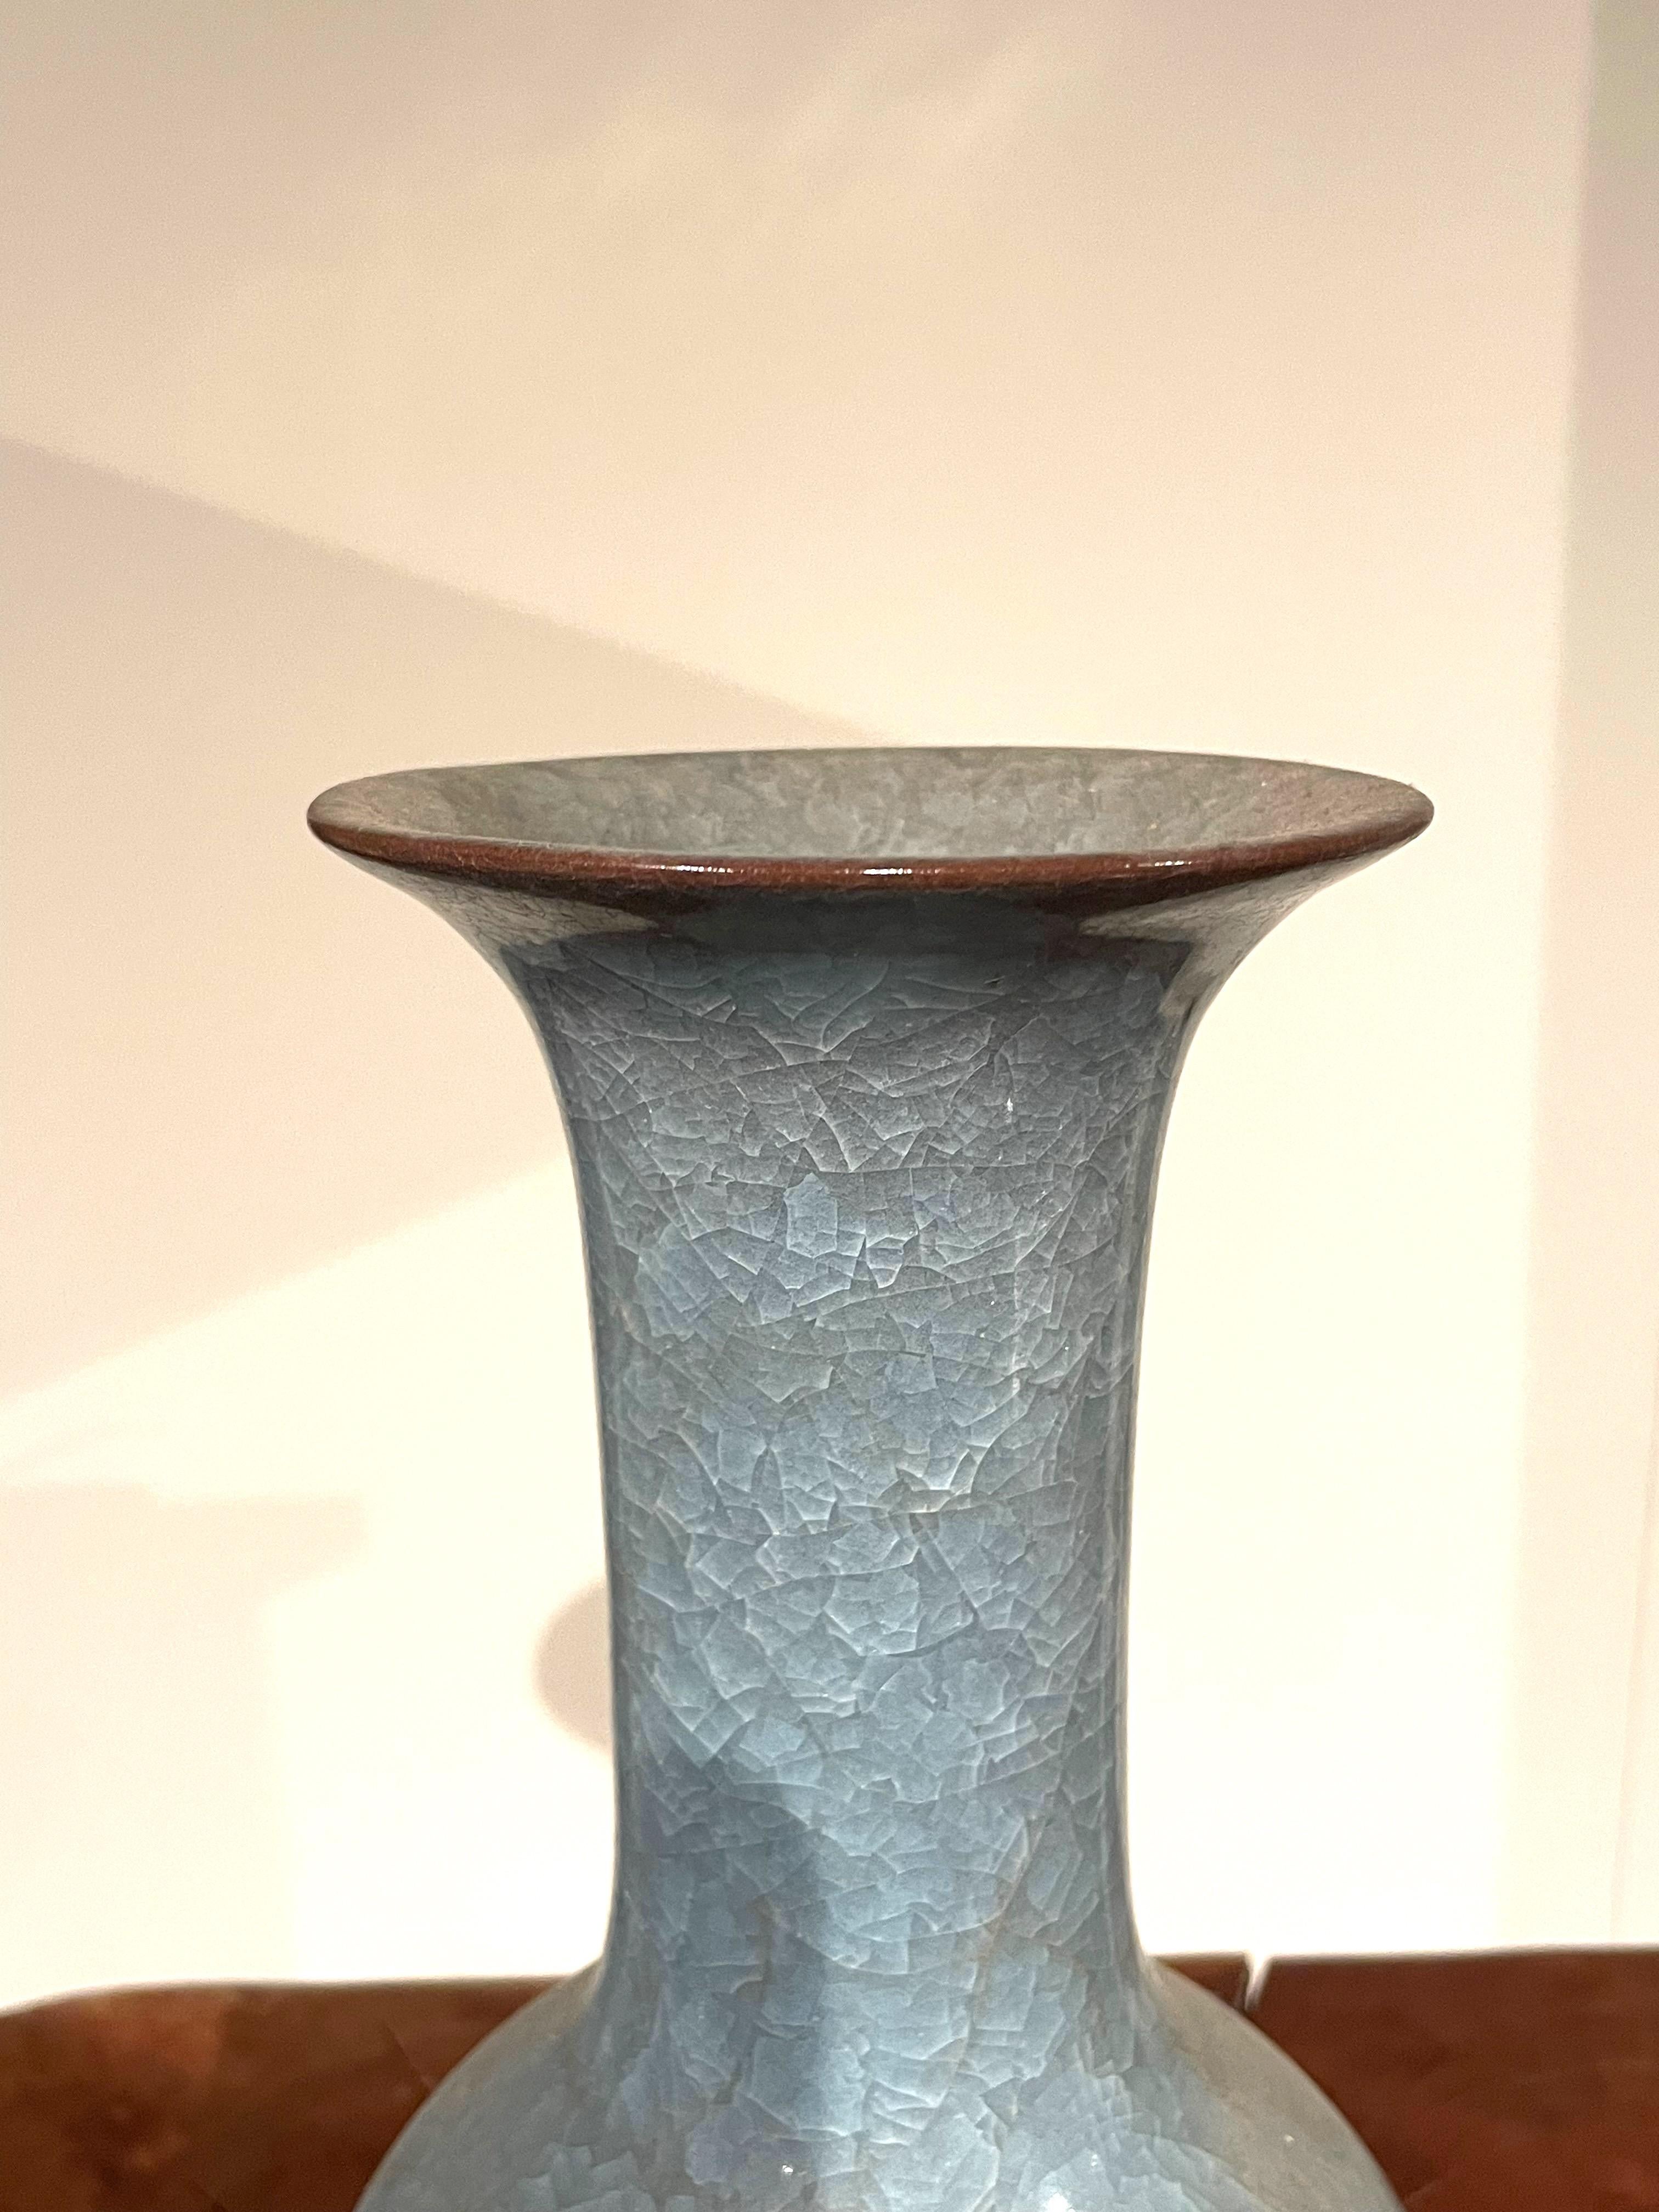 Vase chinois contemporain de couleur bleue avec glaçure craquelée.
Col tubulaire allongé.
Provenant d'une grande collection avec des formes et des tailles variées.
ARRIVÉE AVRIL